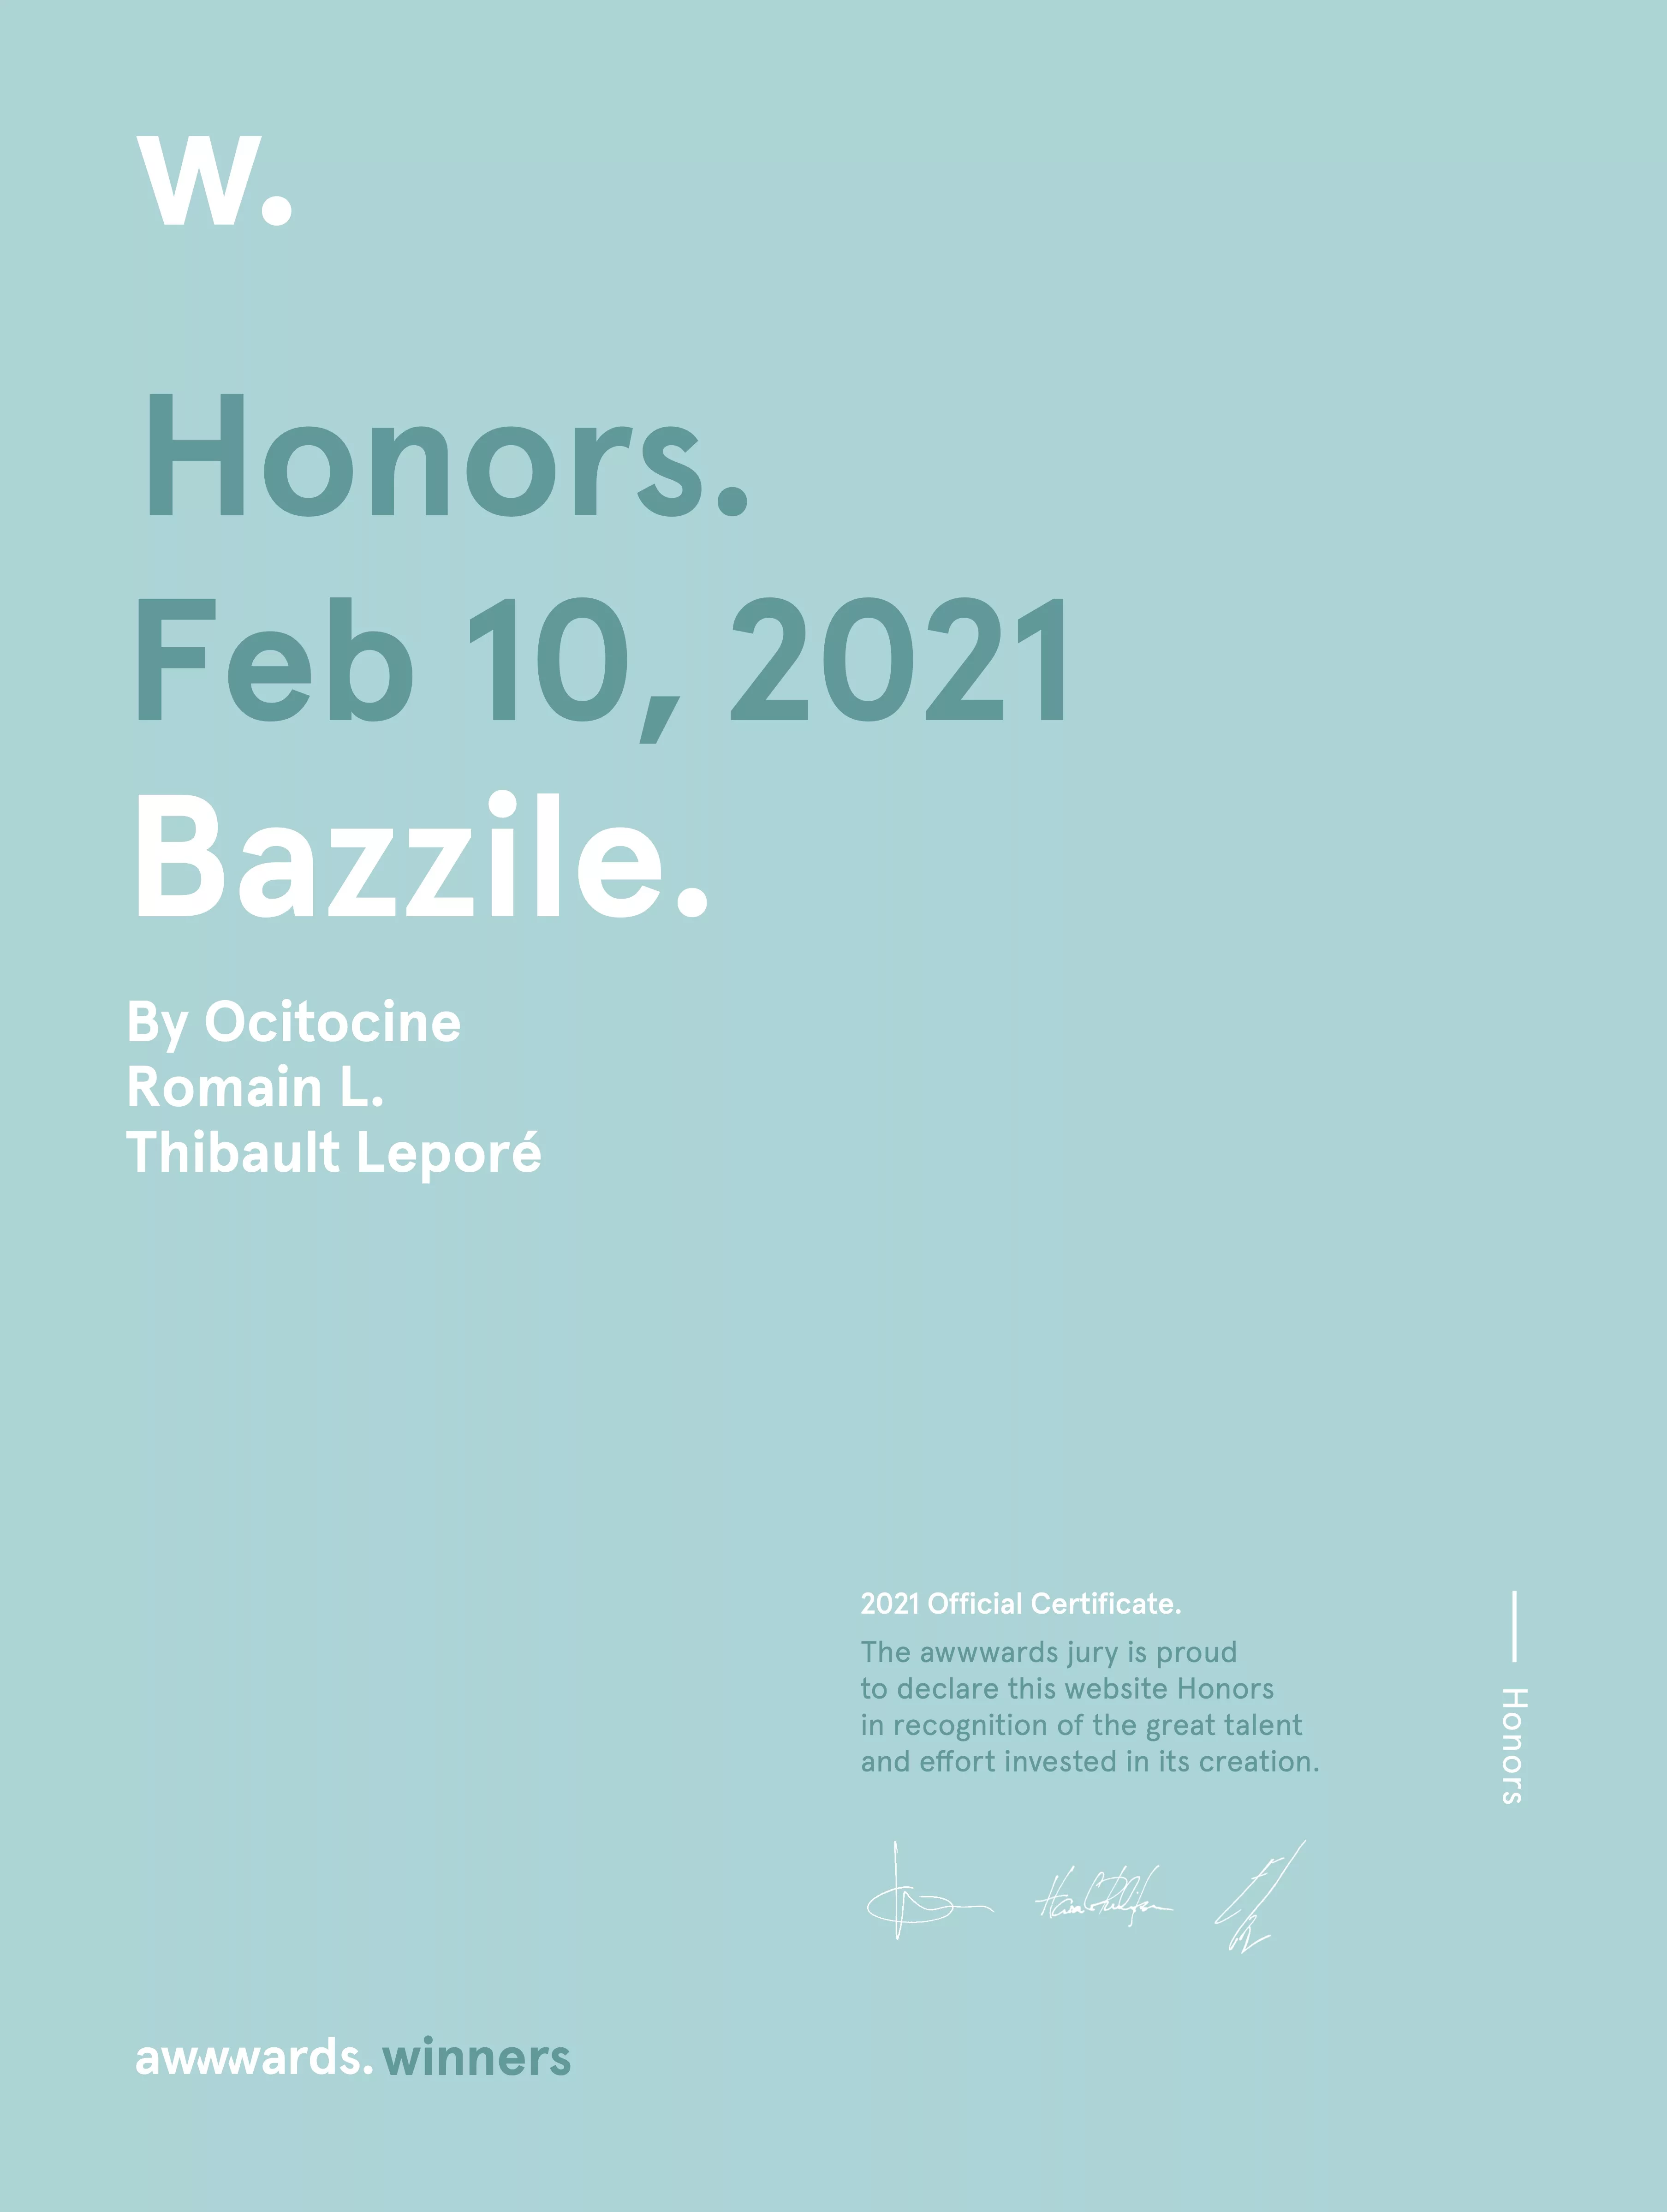 Ocitocine, agence créative web et branding, a remporté un prix "Awwwards Honorable Mention" pour la réalisation du site web bazzile.ch